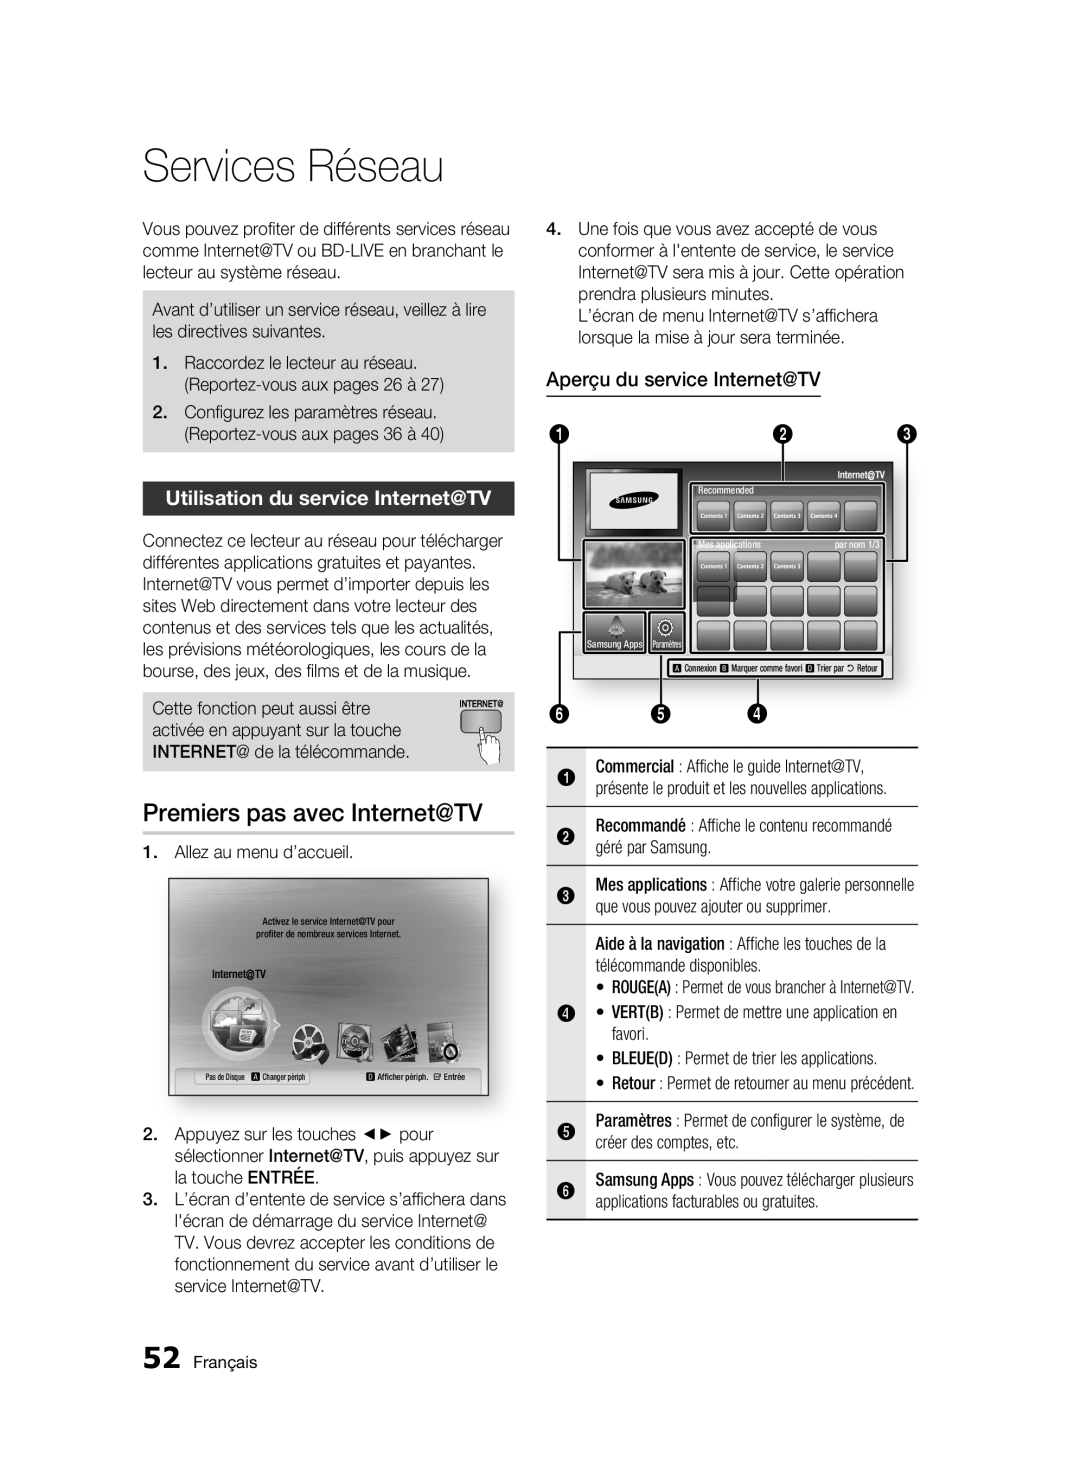 Samsung BD-C6300 user manual Services Réseau, Premiers pas avec Internet@TV, Utilisation du service Internet@TV 